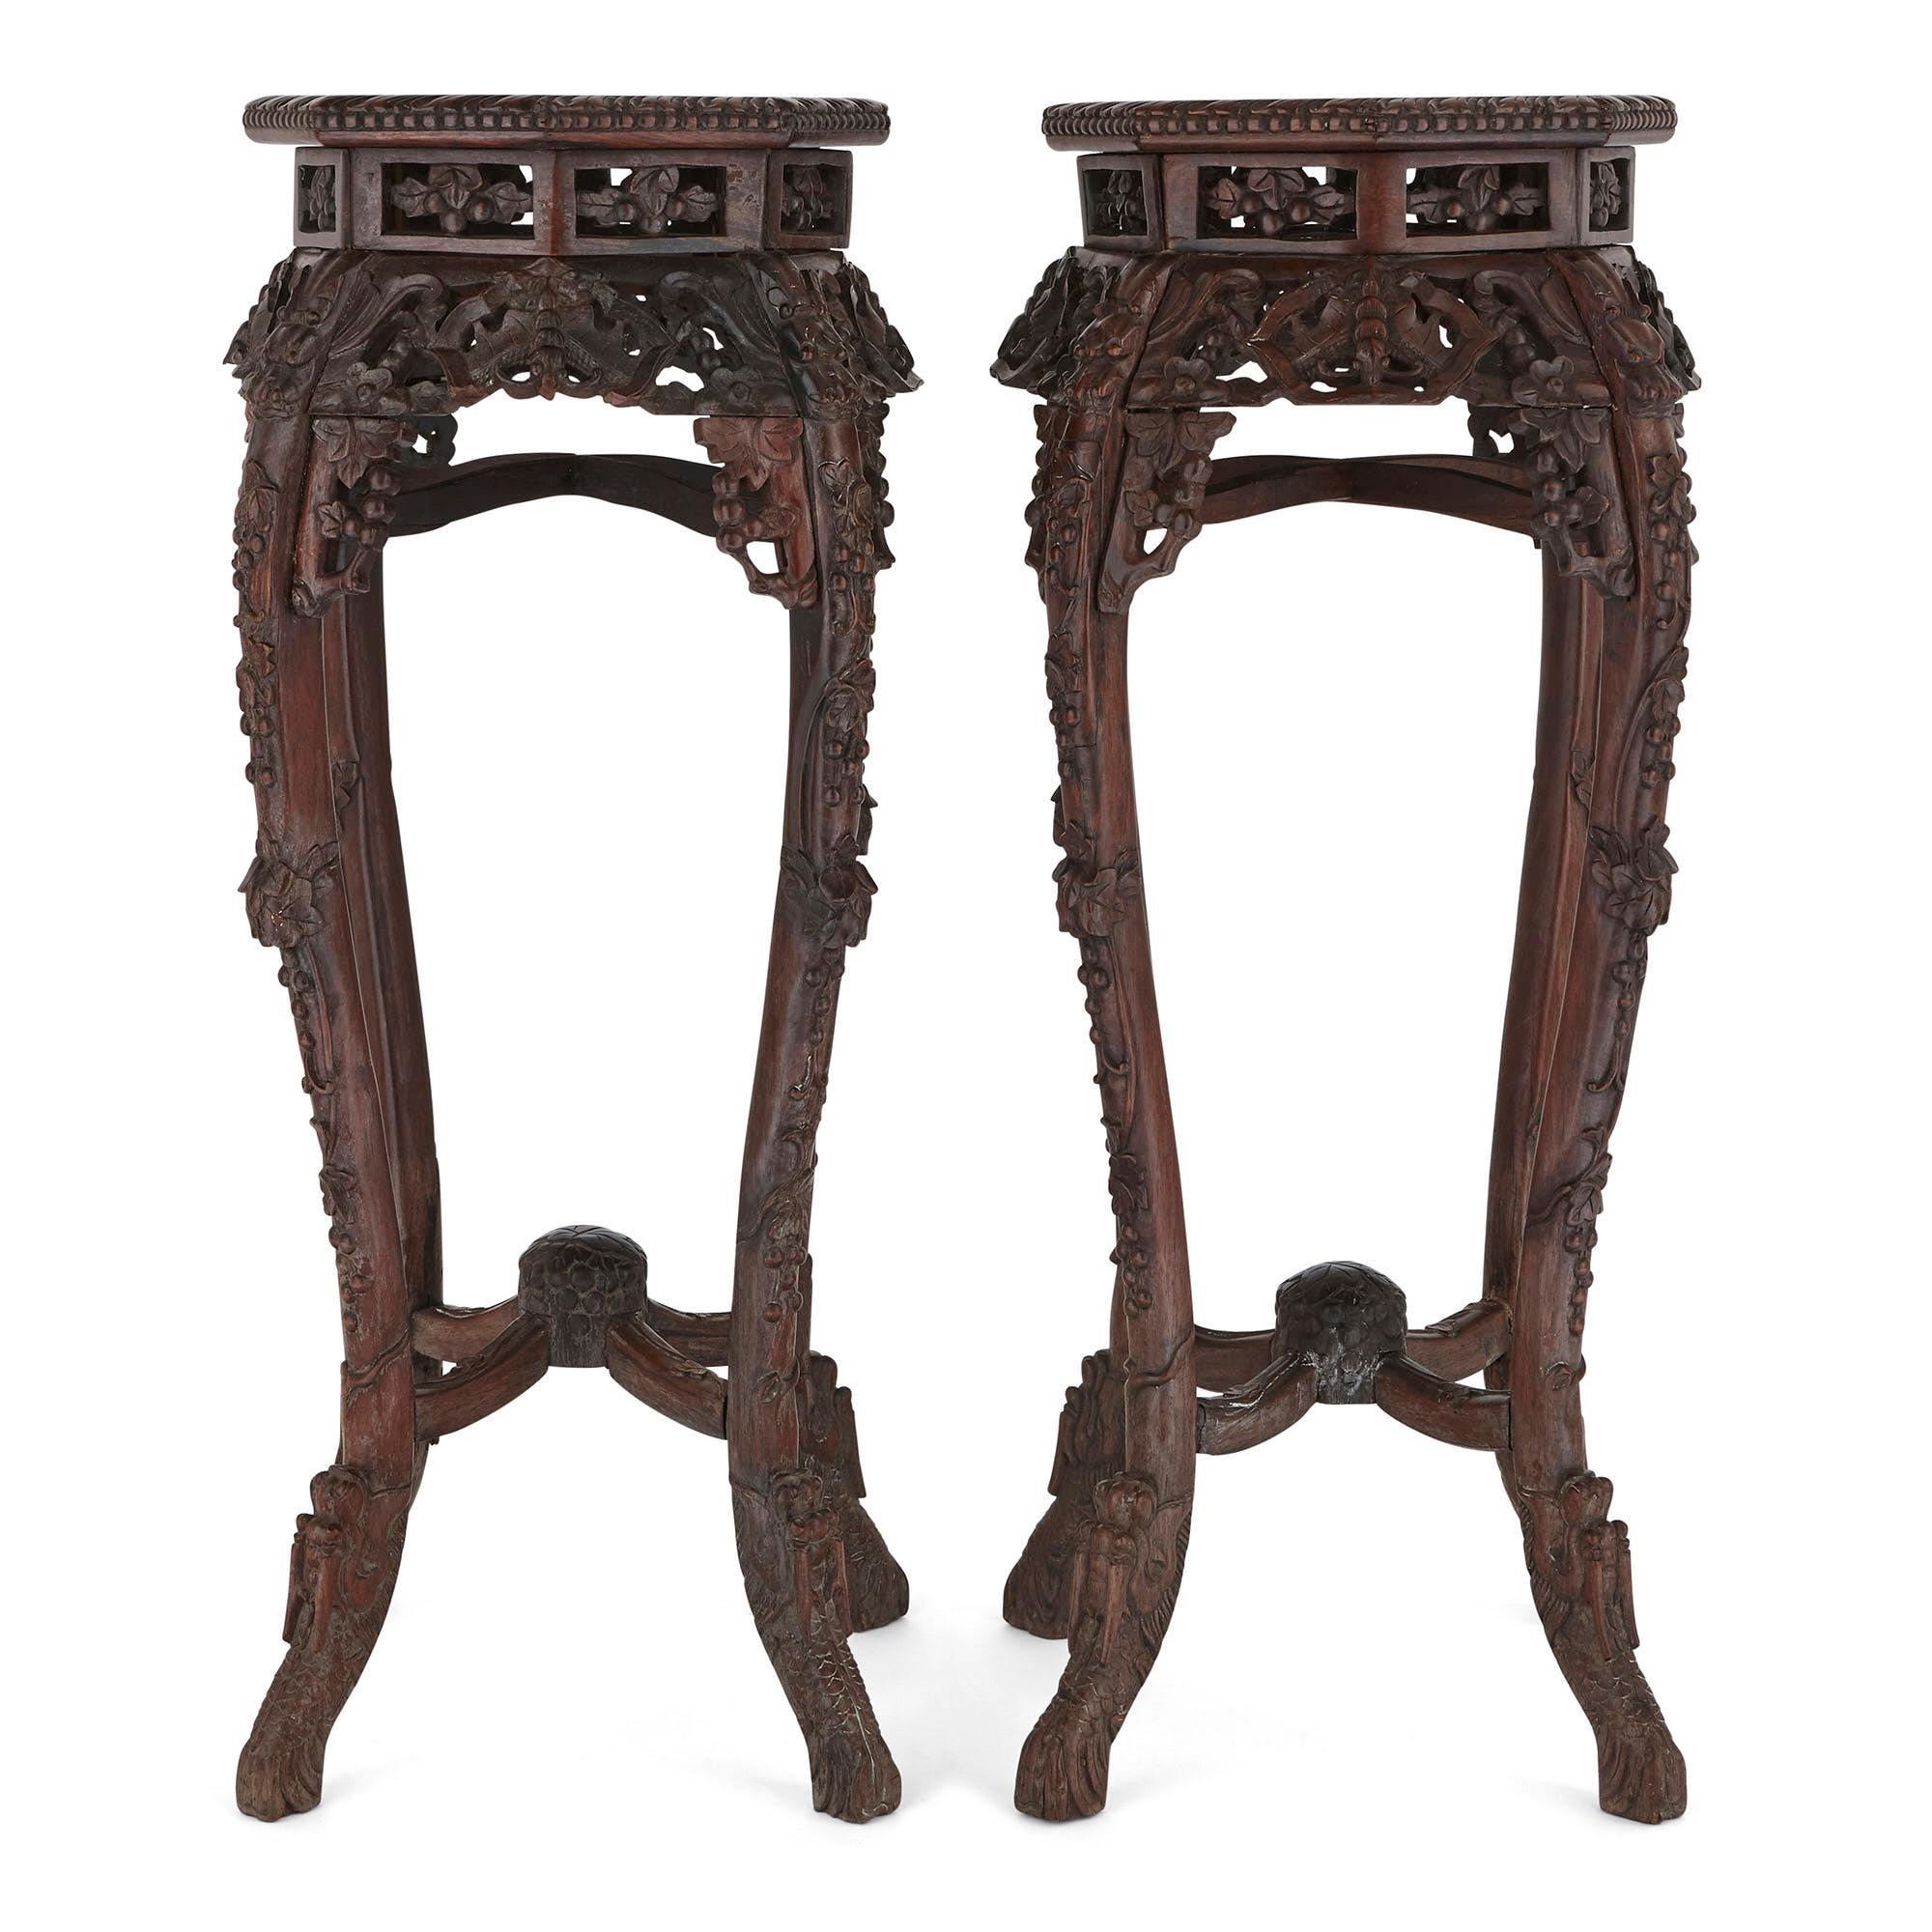 Die Ständer dieses passenden Paares sind aus Hongmu-Holz (chinesisches Hartholz) gefertigt. Jeder Ständer ruht auf vier stilisierten und ausgestellten Drachenfüßen, die in vier kunstvoll geschnitzte Cabriole-Beine übergehen. Die Beine sind durch